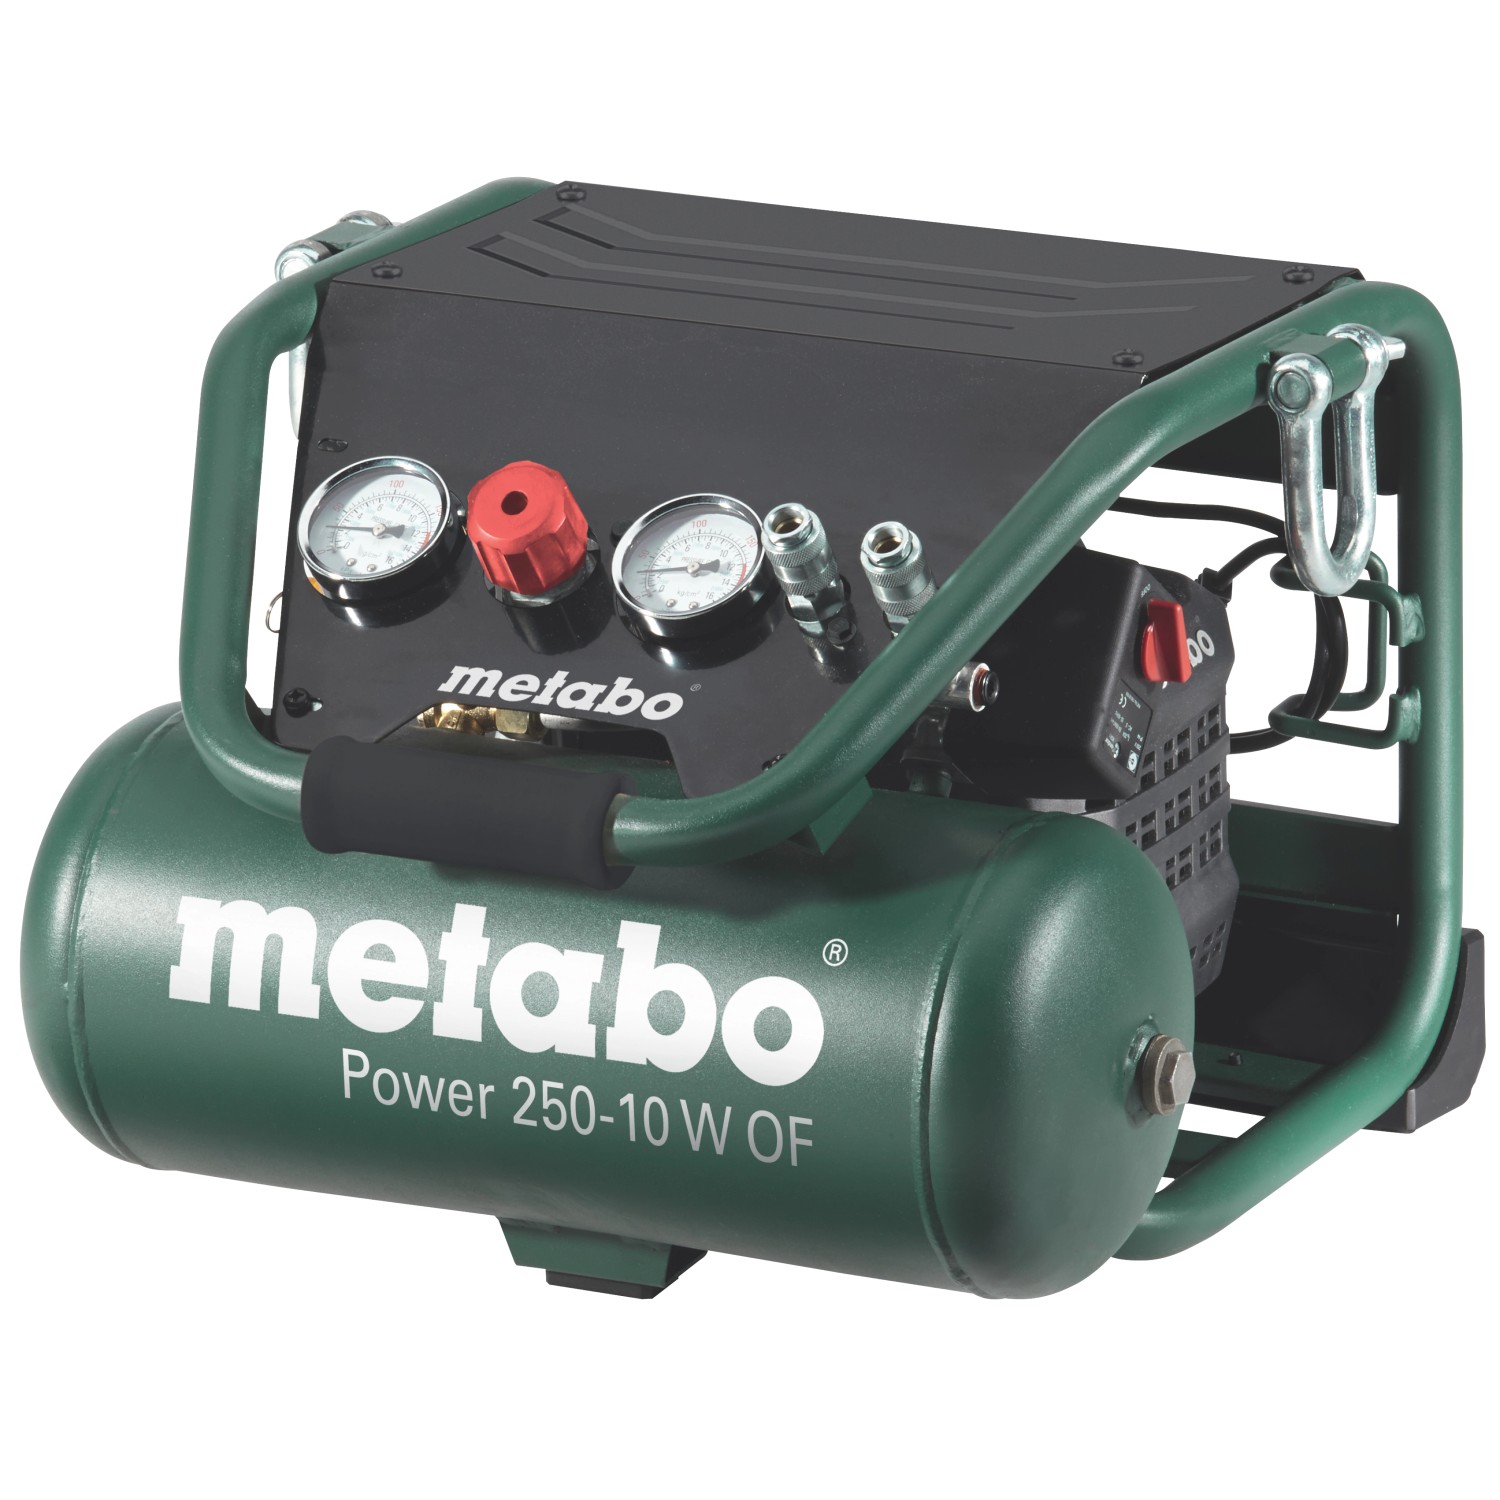 Metabo Kompressor Power 250-10 W OF günstig online kaufen